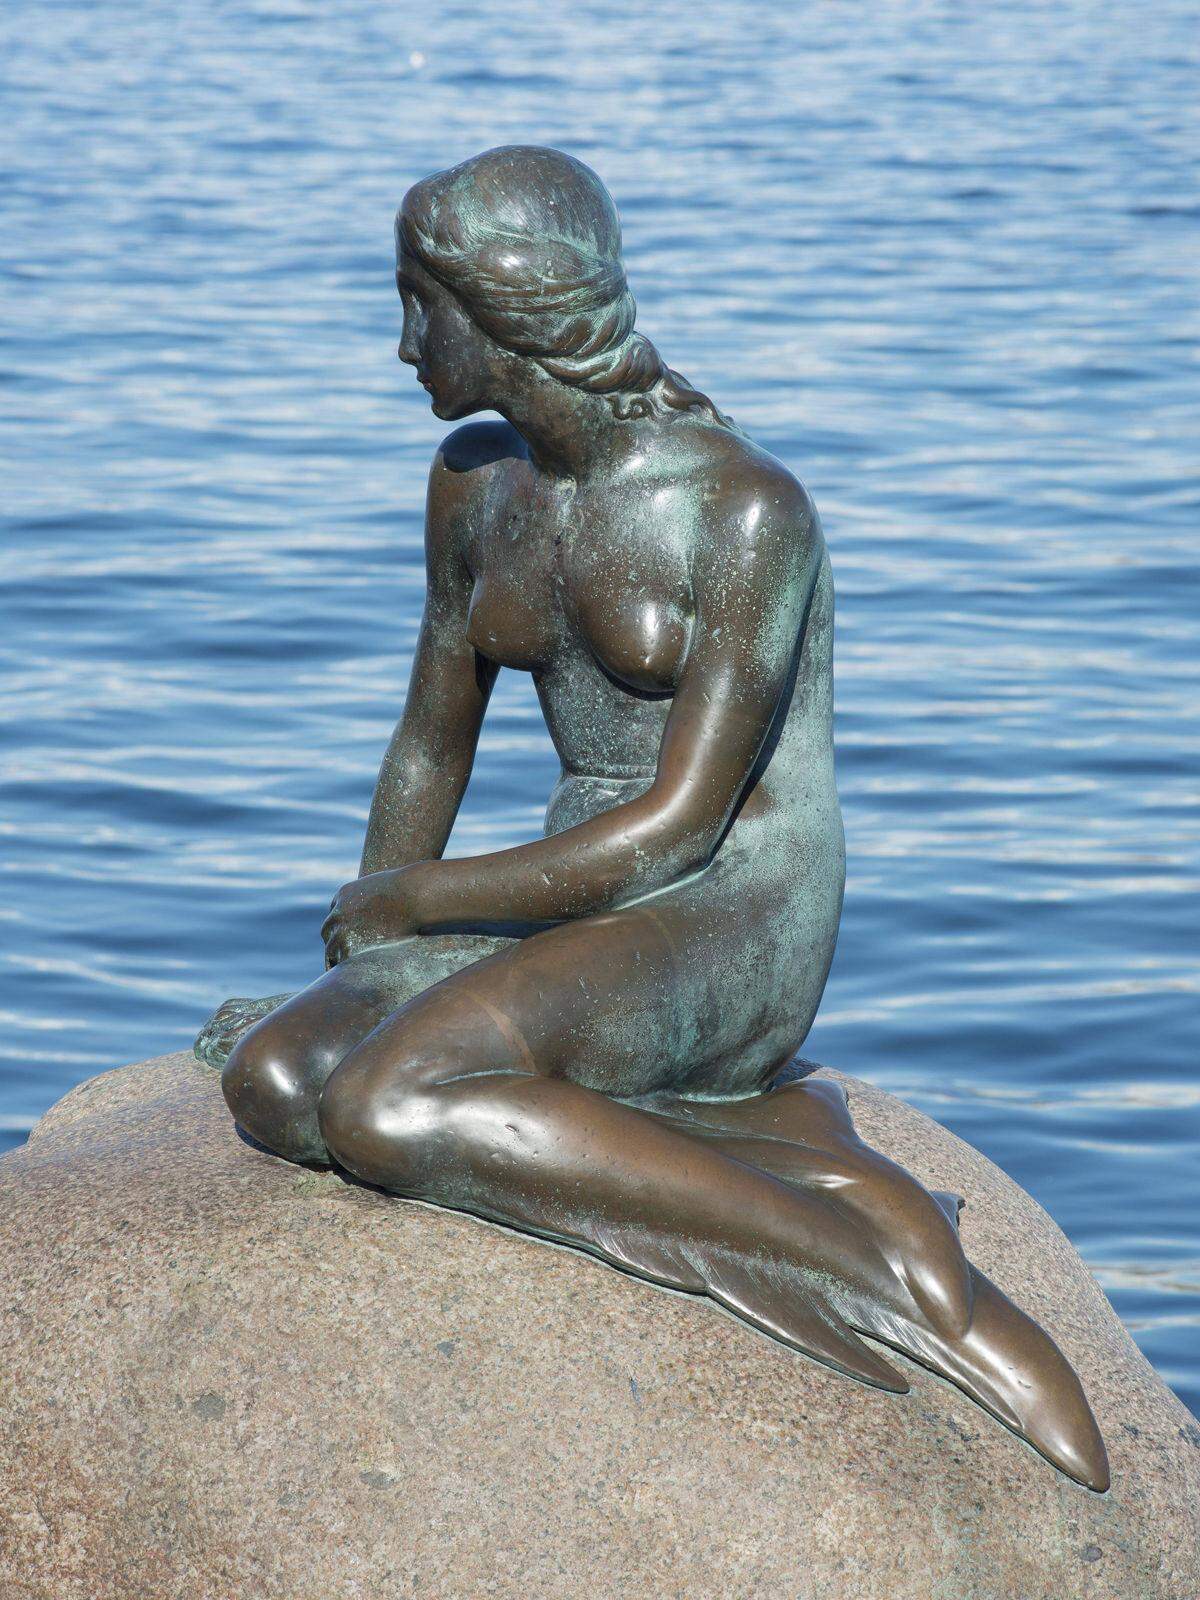 Die Statue der Kleinen Meerjungfrau in Kopenhagen blickt zwar ganz verträumt ins Wasser, um ein gutes Foto zu bekommen muss man sich jedoch anstrengen.